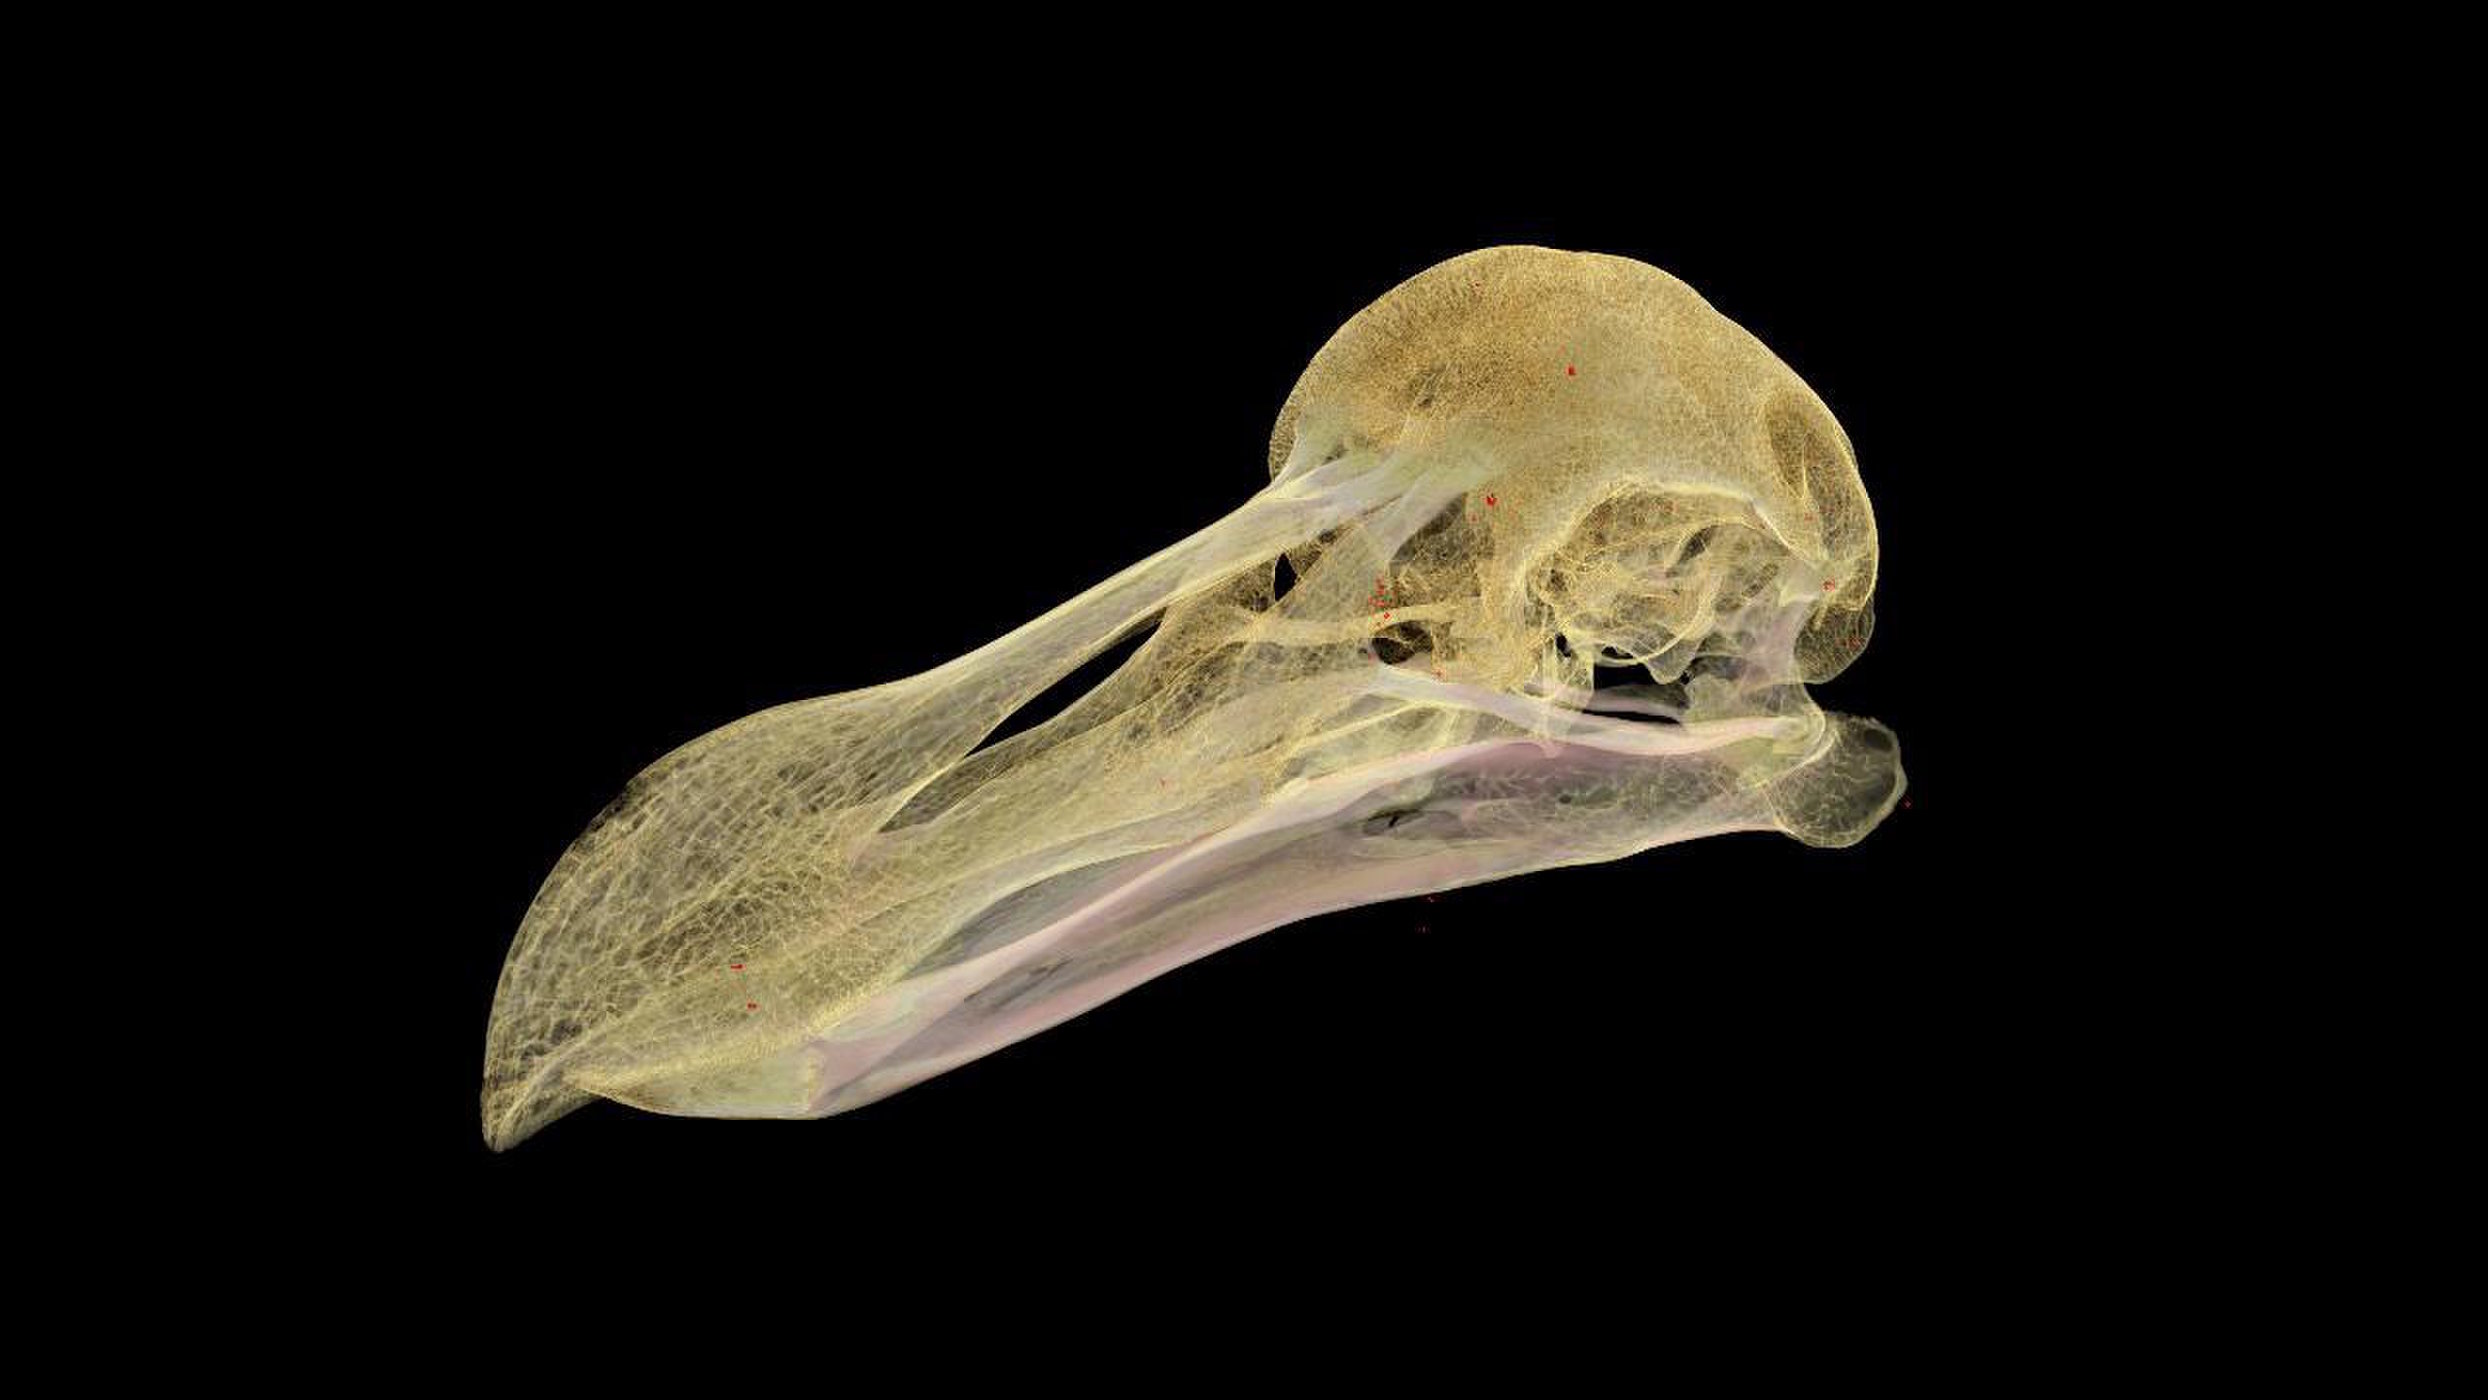 Ảnh dựng kĩ thuật số từ bản chụp CT của giống Oxford dodo nổi tiếng.